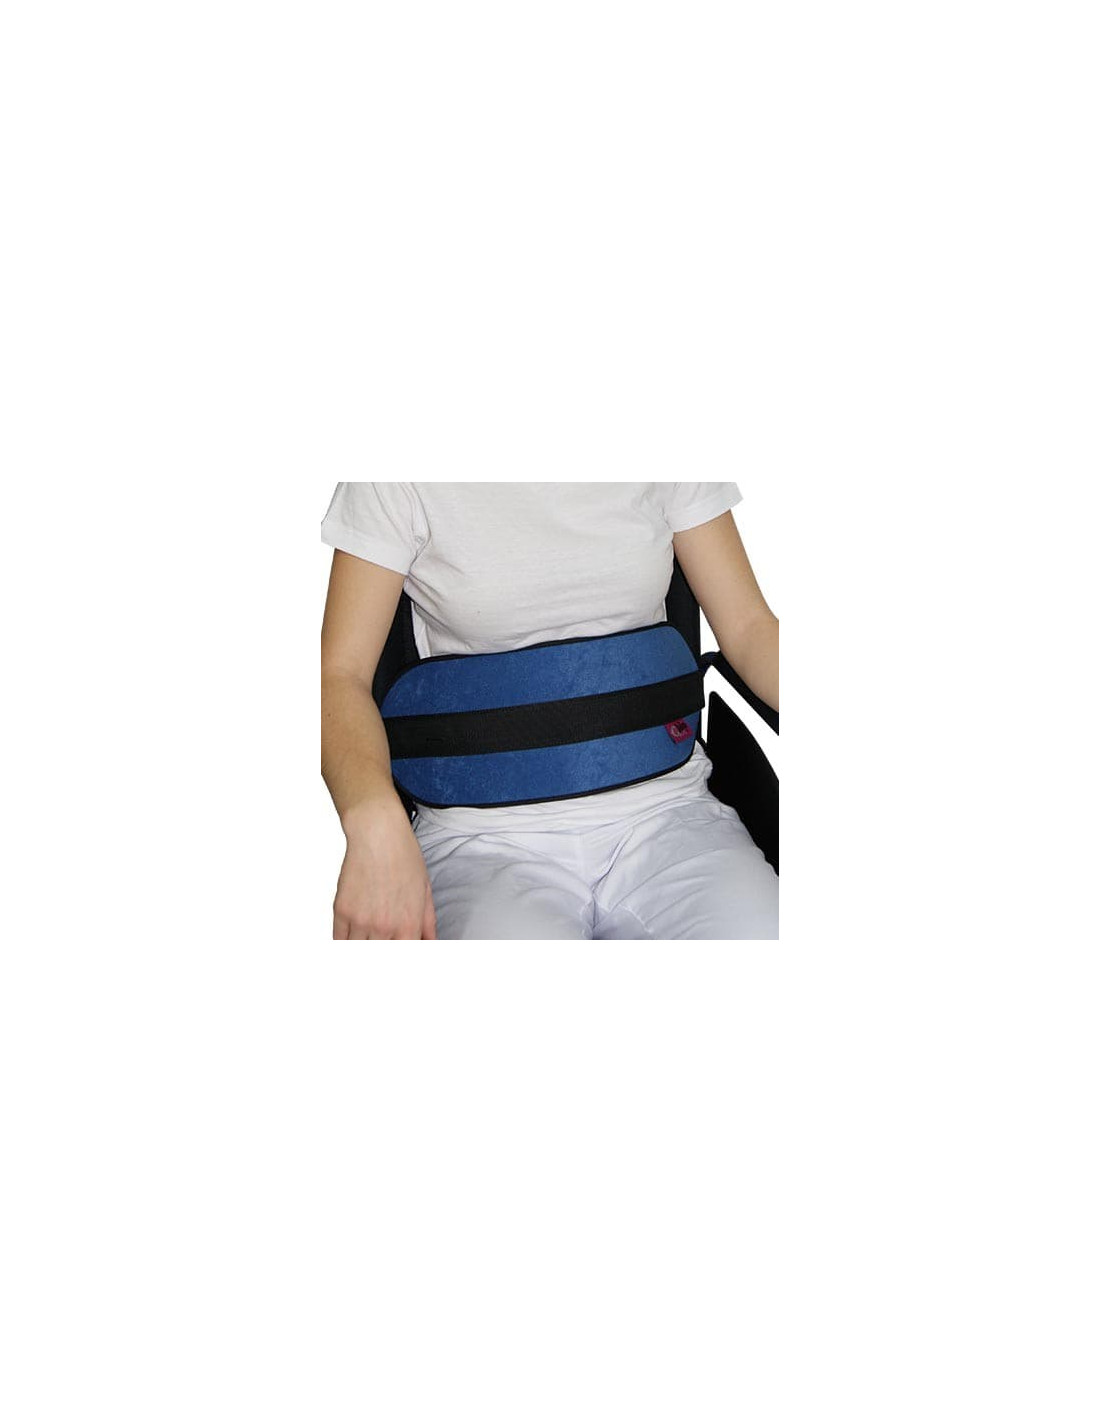 https://www.ortopediaflorencio.com/5260-thickbox_default/cintur-n-abdominal-acolchado-para-silla-de-ruedas.jpg